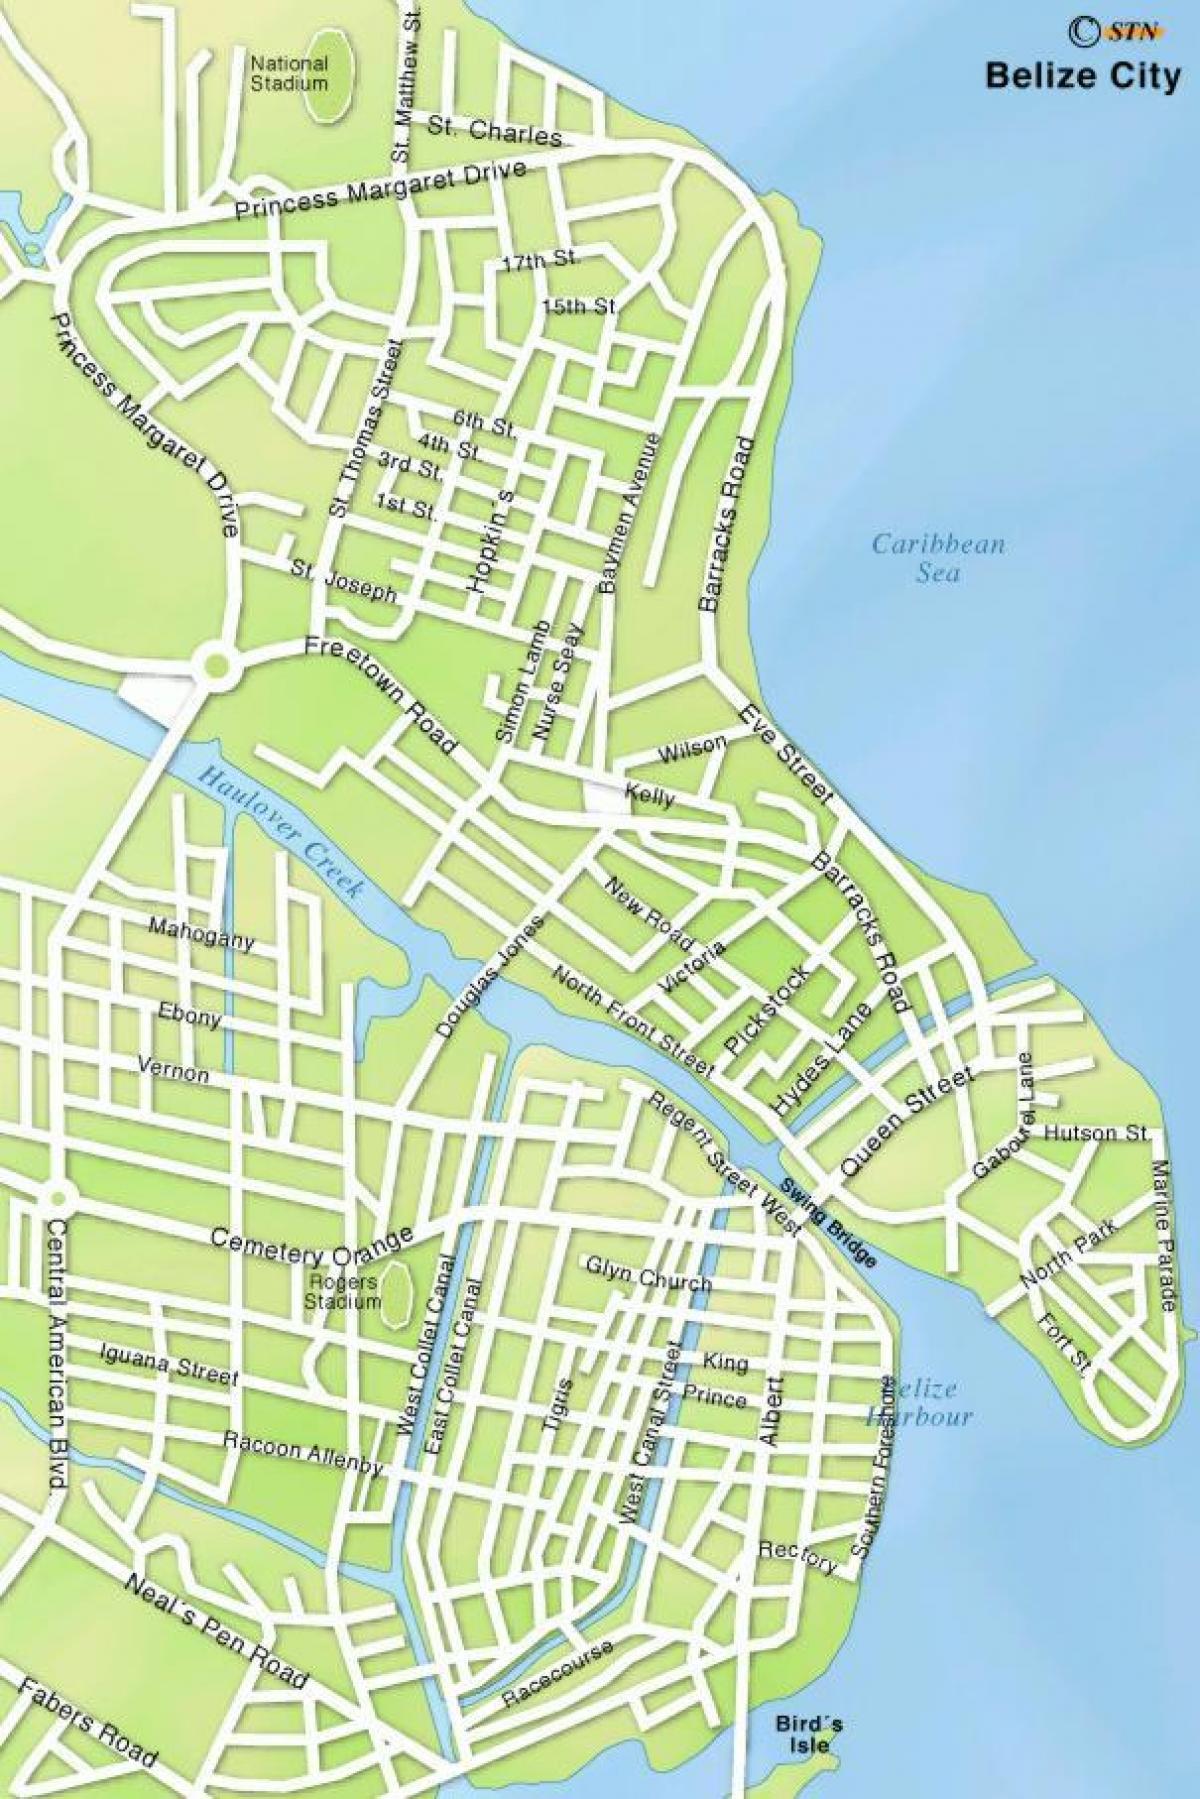 नक्शा बेलीज़ सिटी की सड़कों